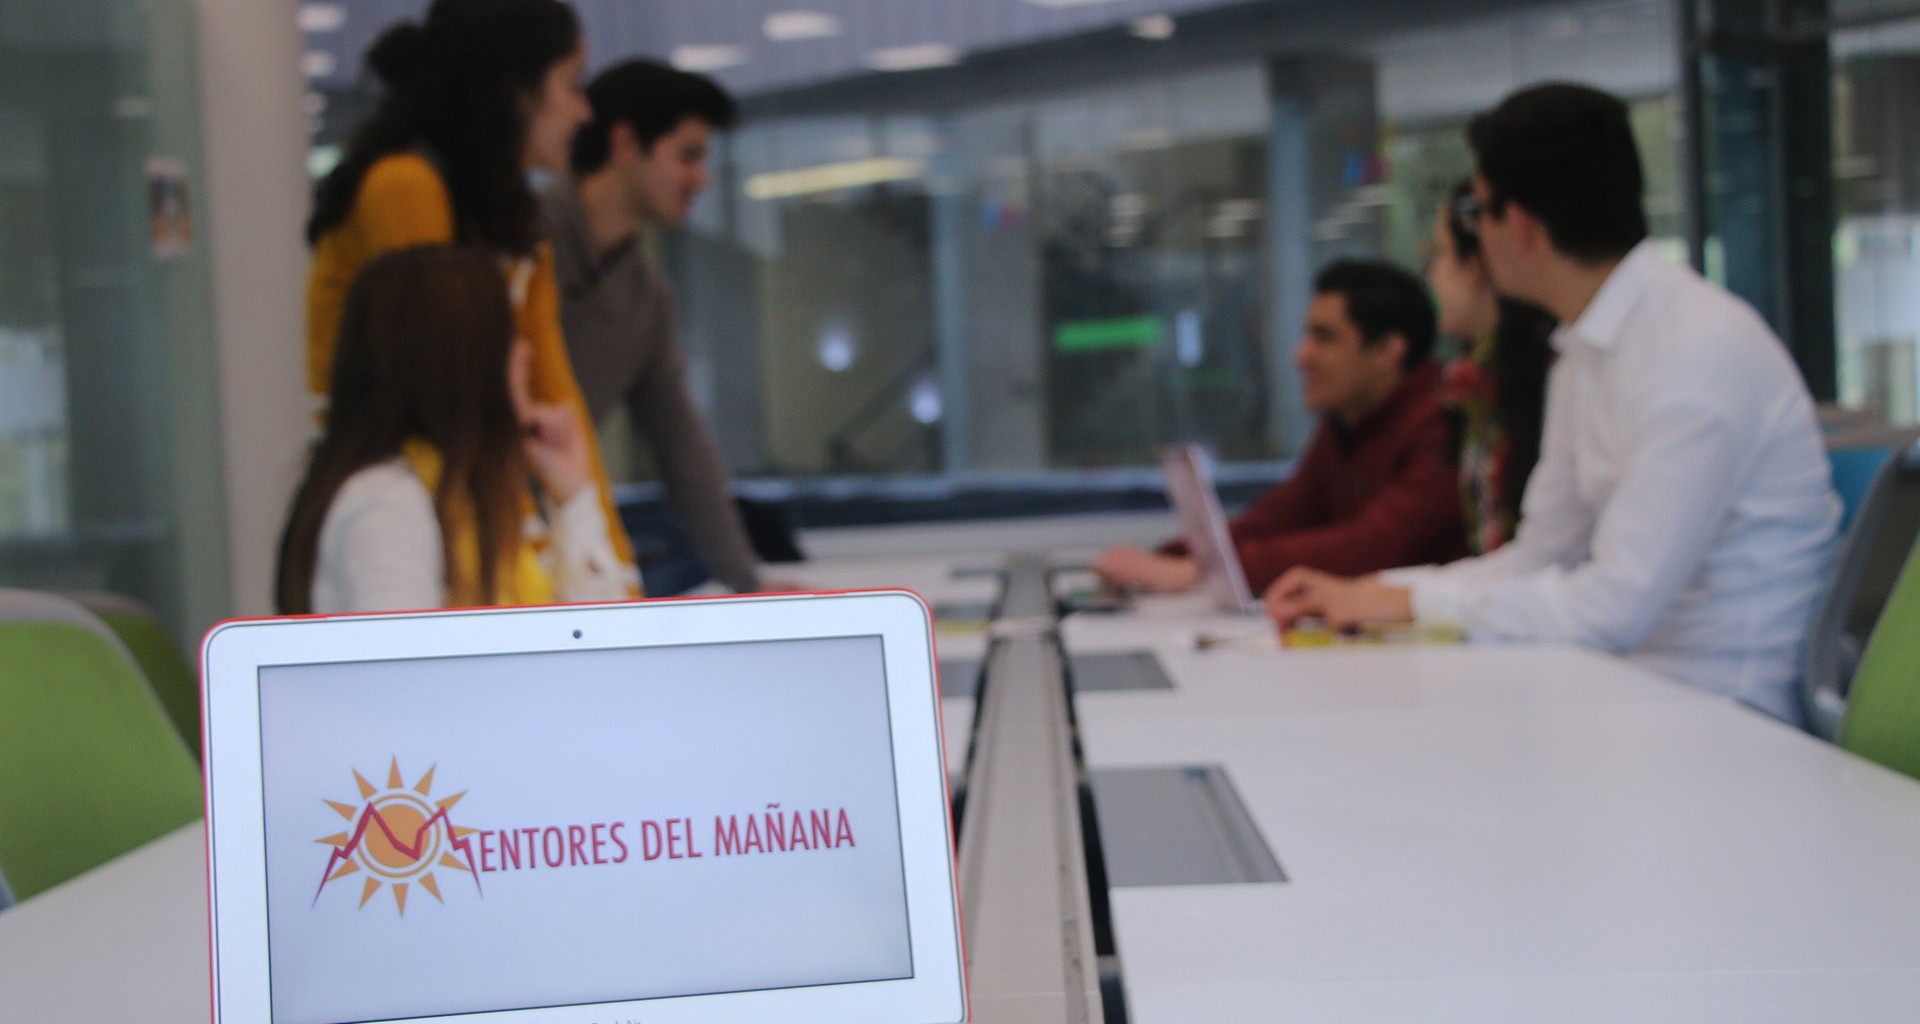 Mesa directiva del grupo estudiantil Mentores del Mañana.